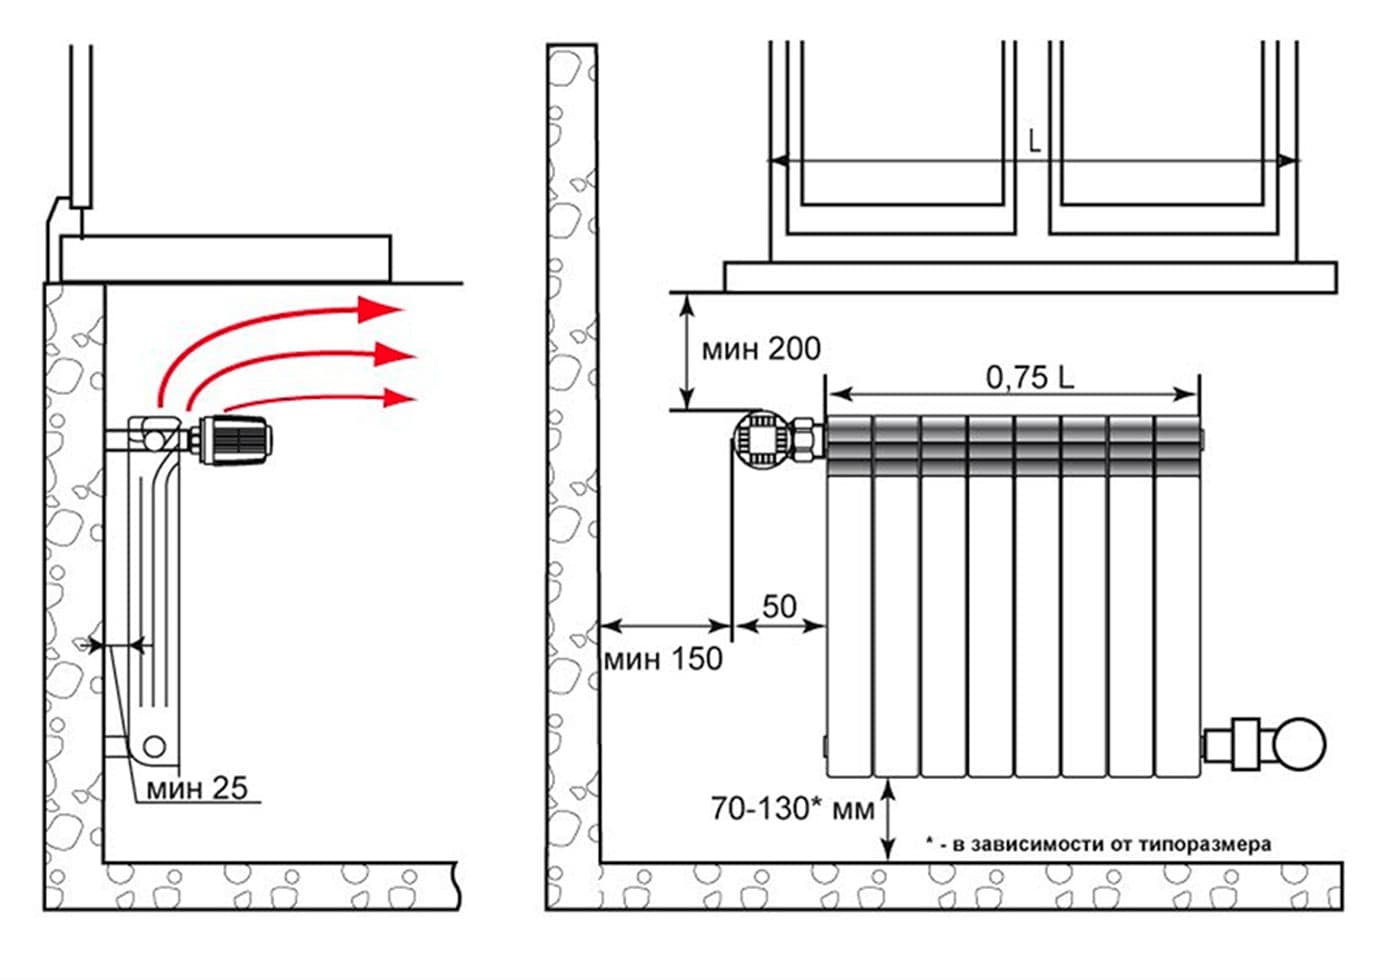 Установка радиаторов в деревянном доме – виды радиаторов, расчет необходимого количества, правила монтажа